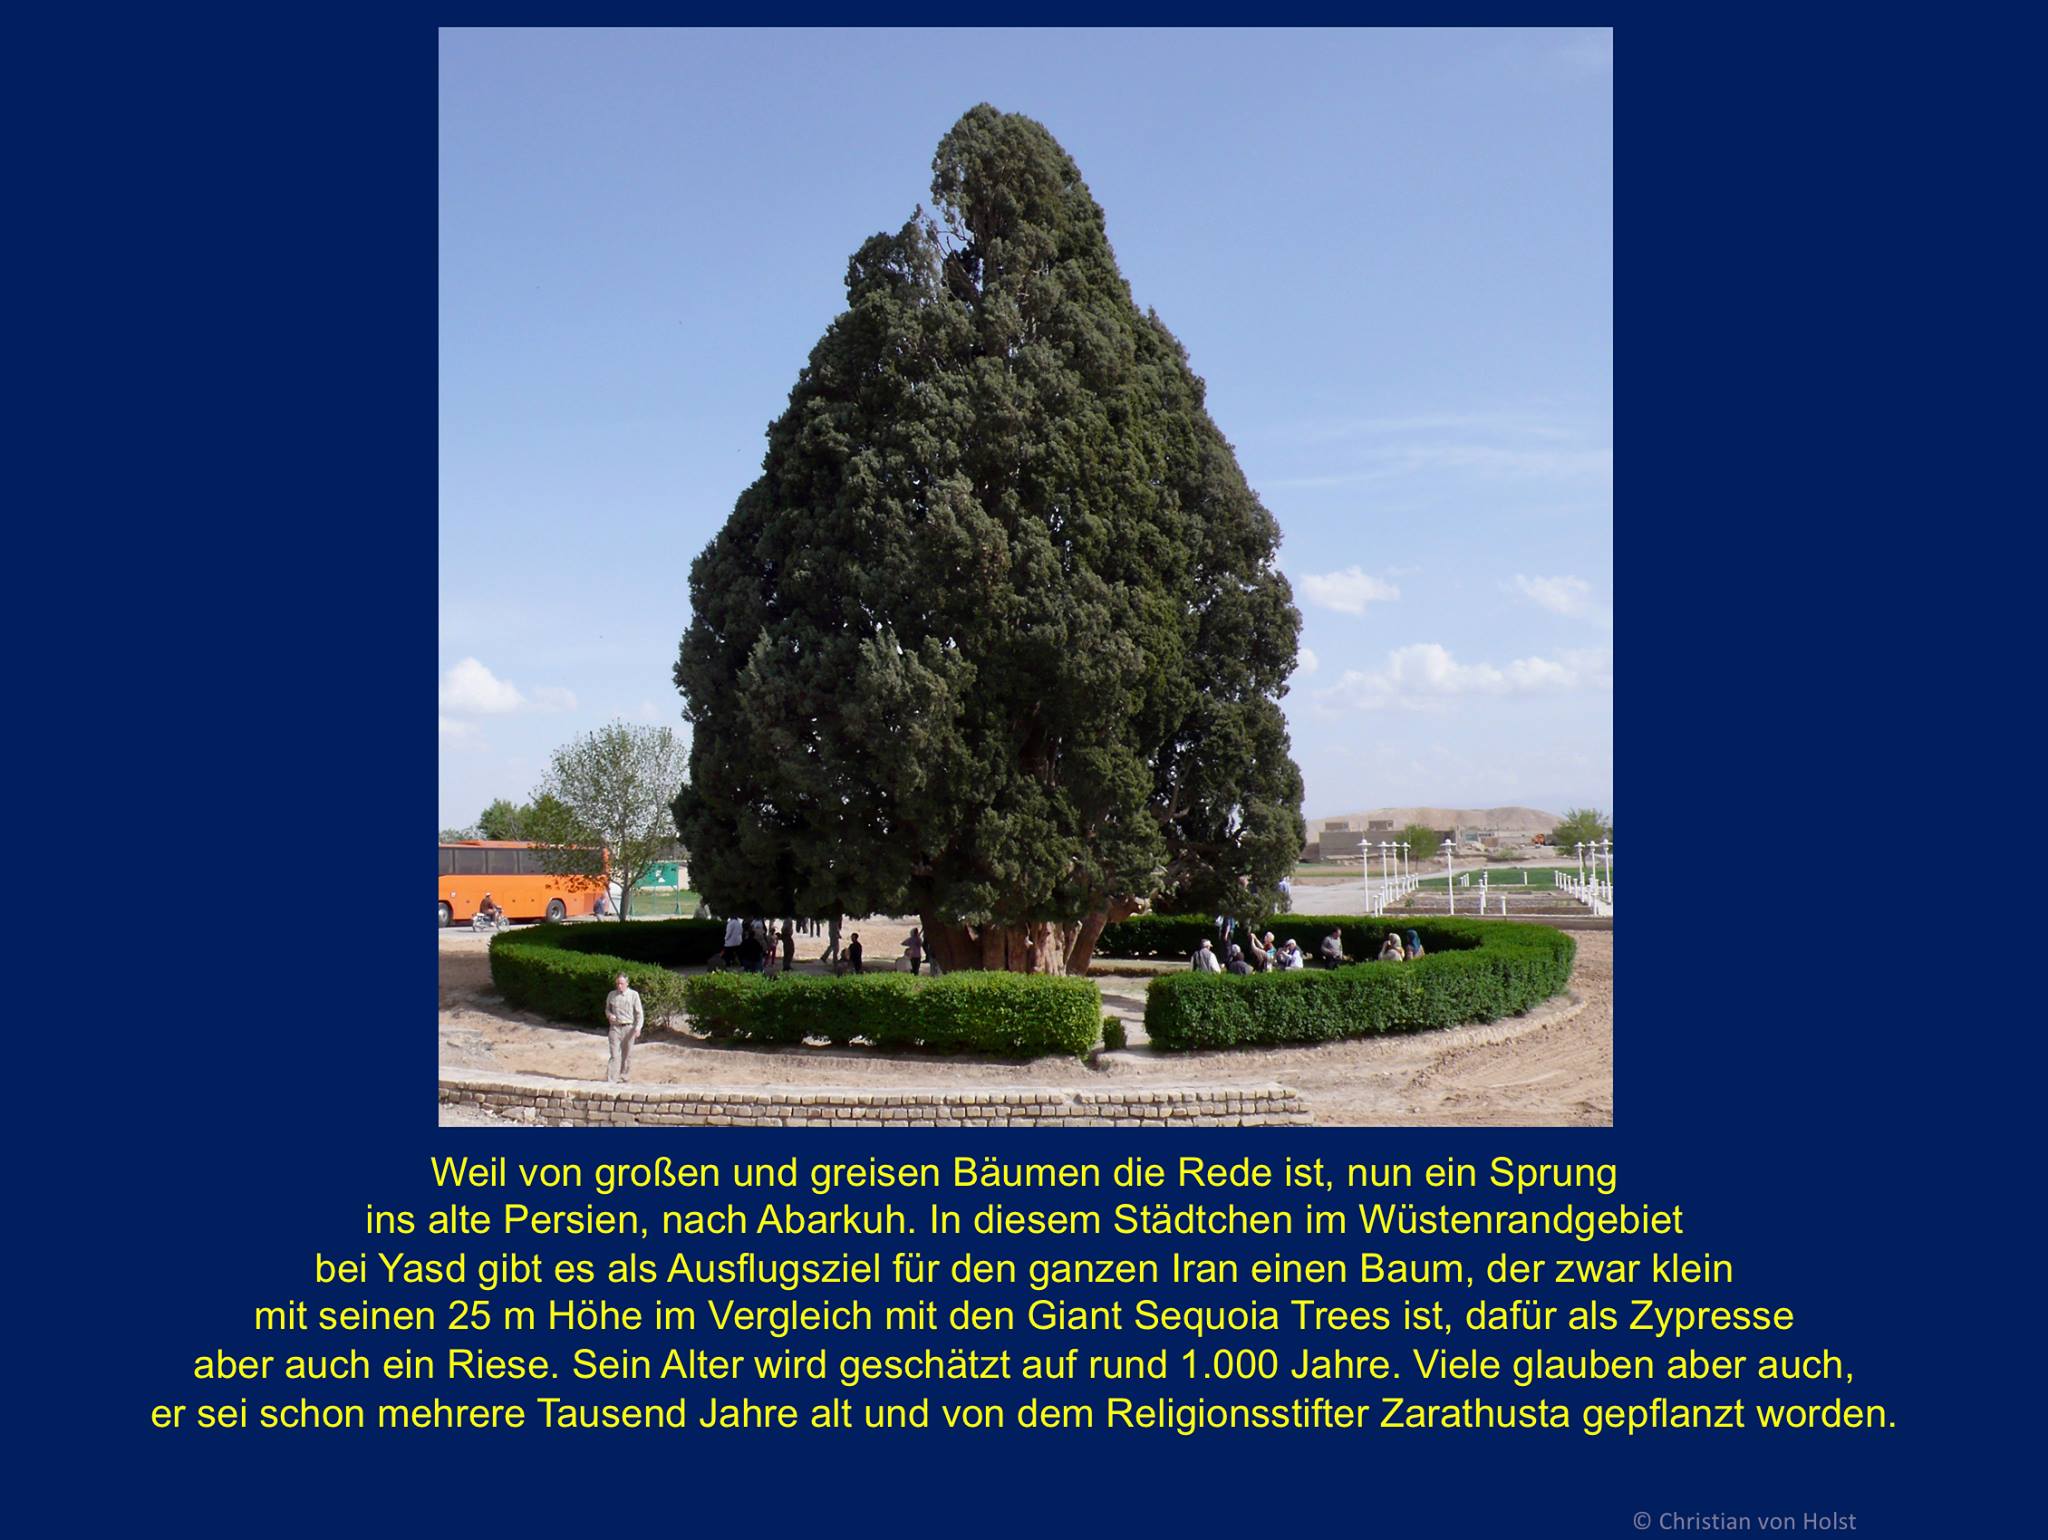 Buchsdinos und weitere Naturriesen  Abarkuh im Iran: grösste und älteste Zypresse des Landes